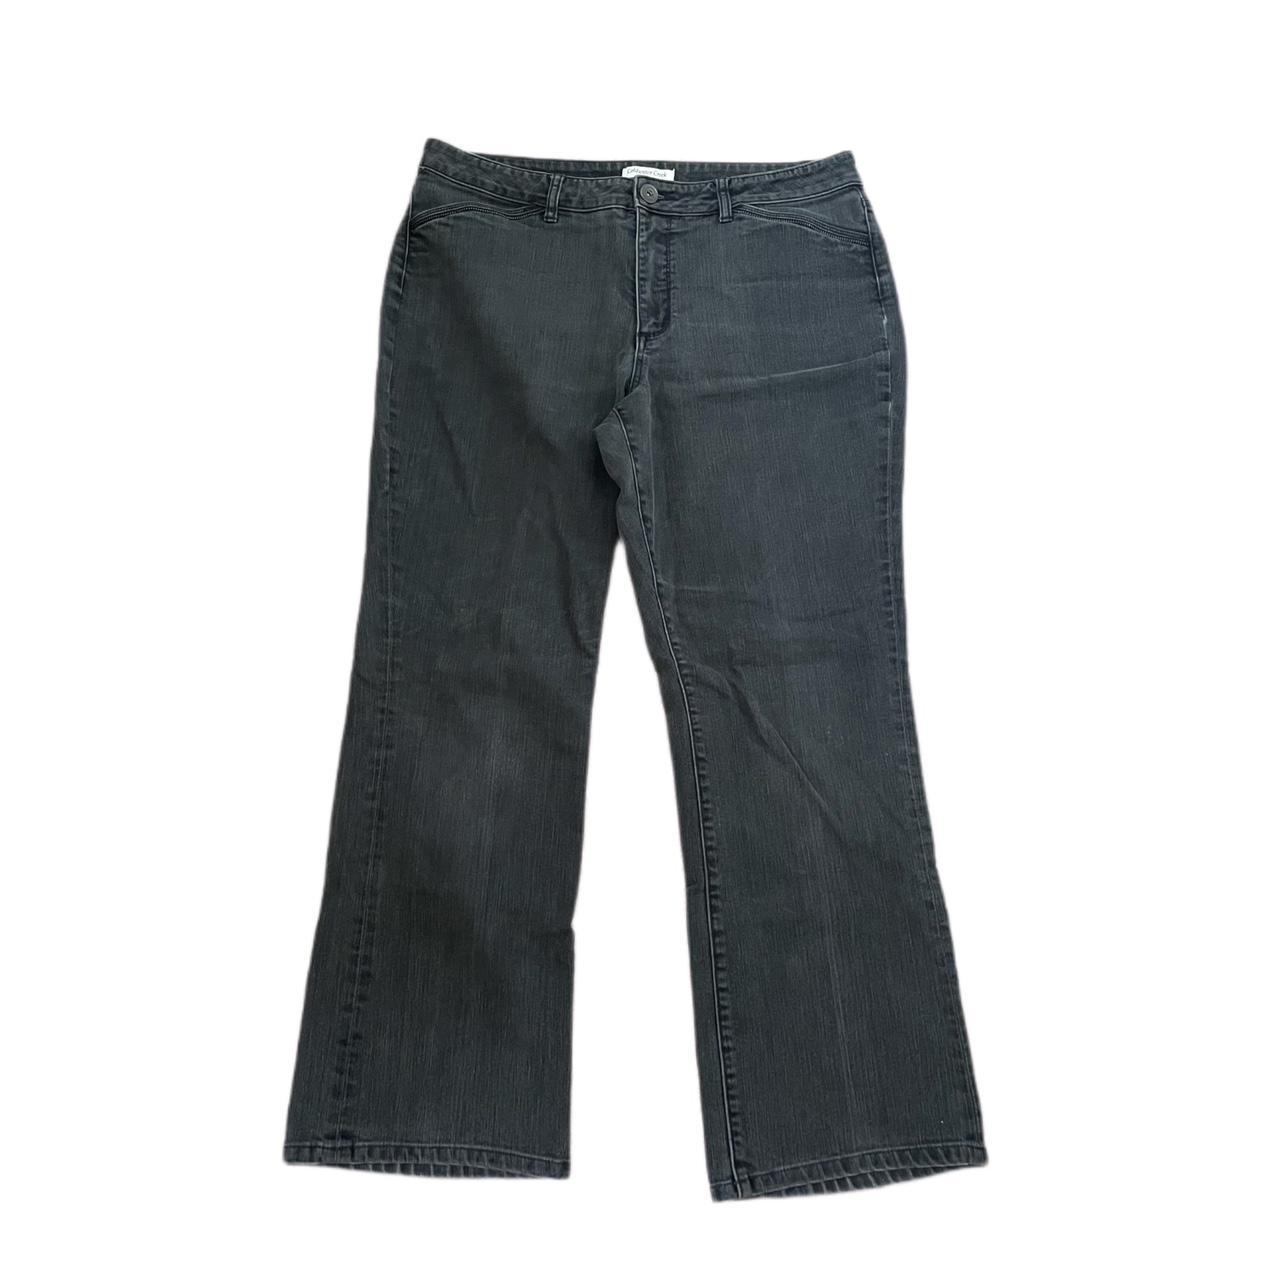 Black jeans w/ unique zipper lined pockets - Depop